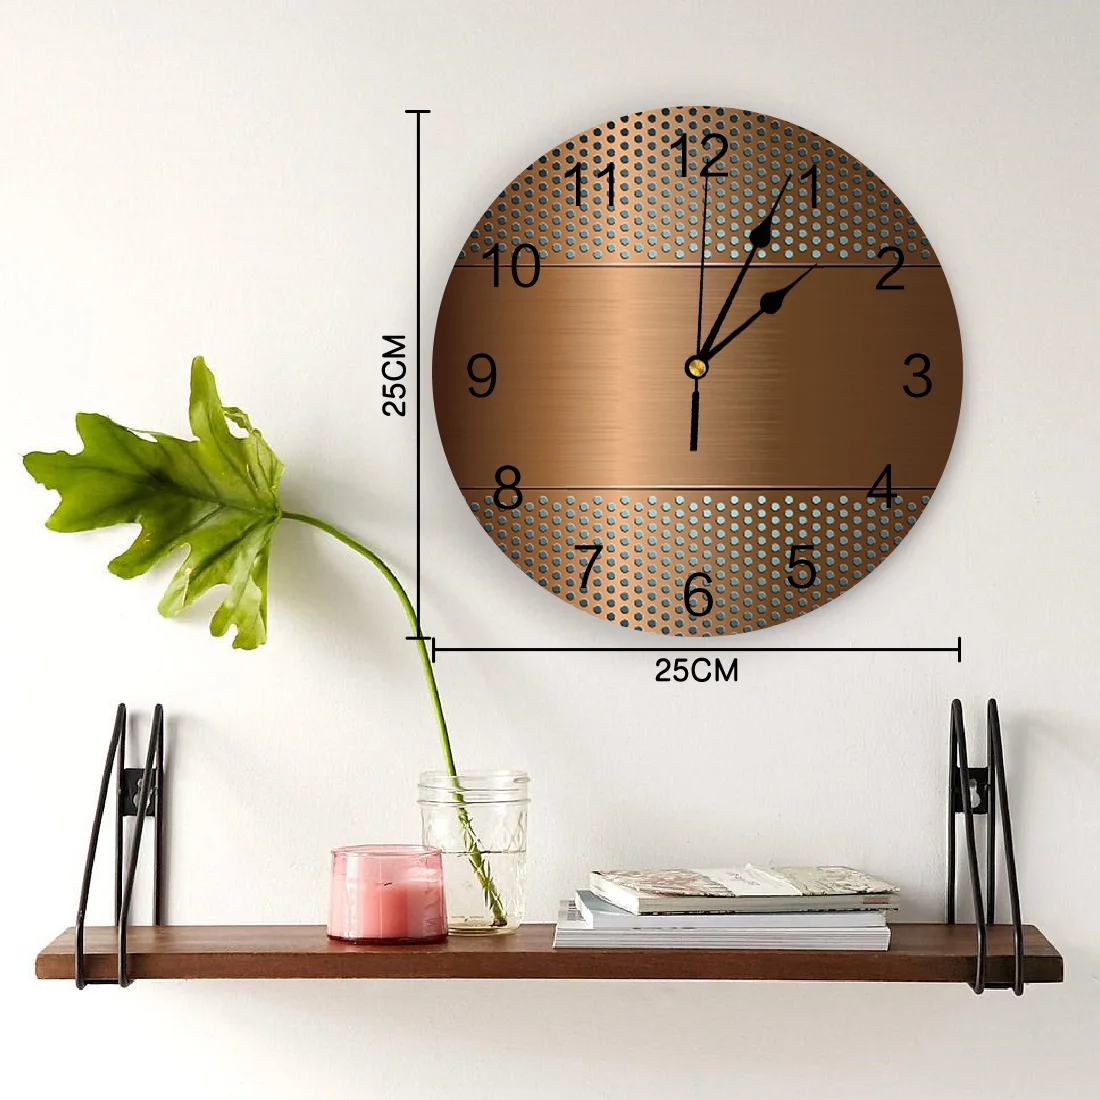 marrom textura de metal relógio de parede design moderno sala estar decoração da cozinha relógio de parede mudo casa decoração interior